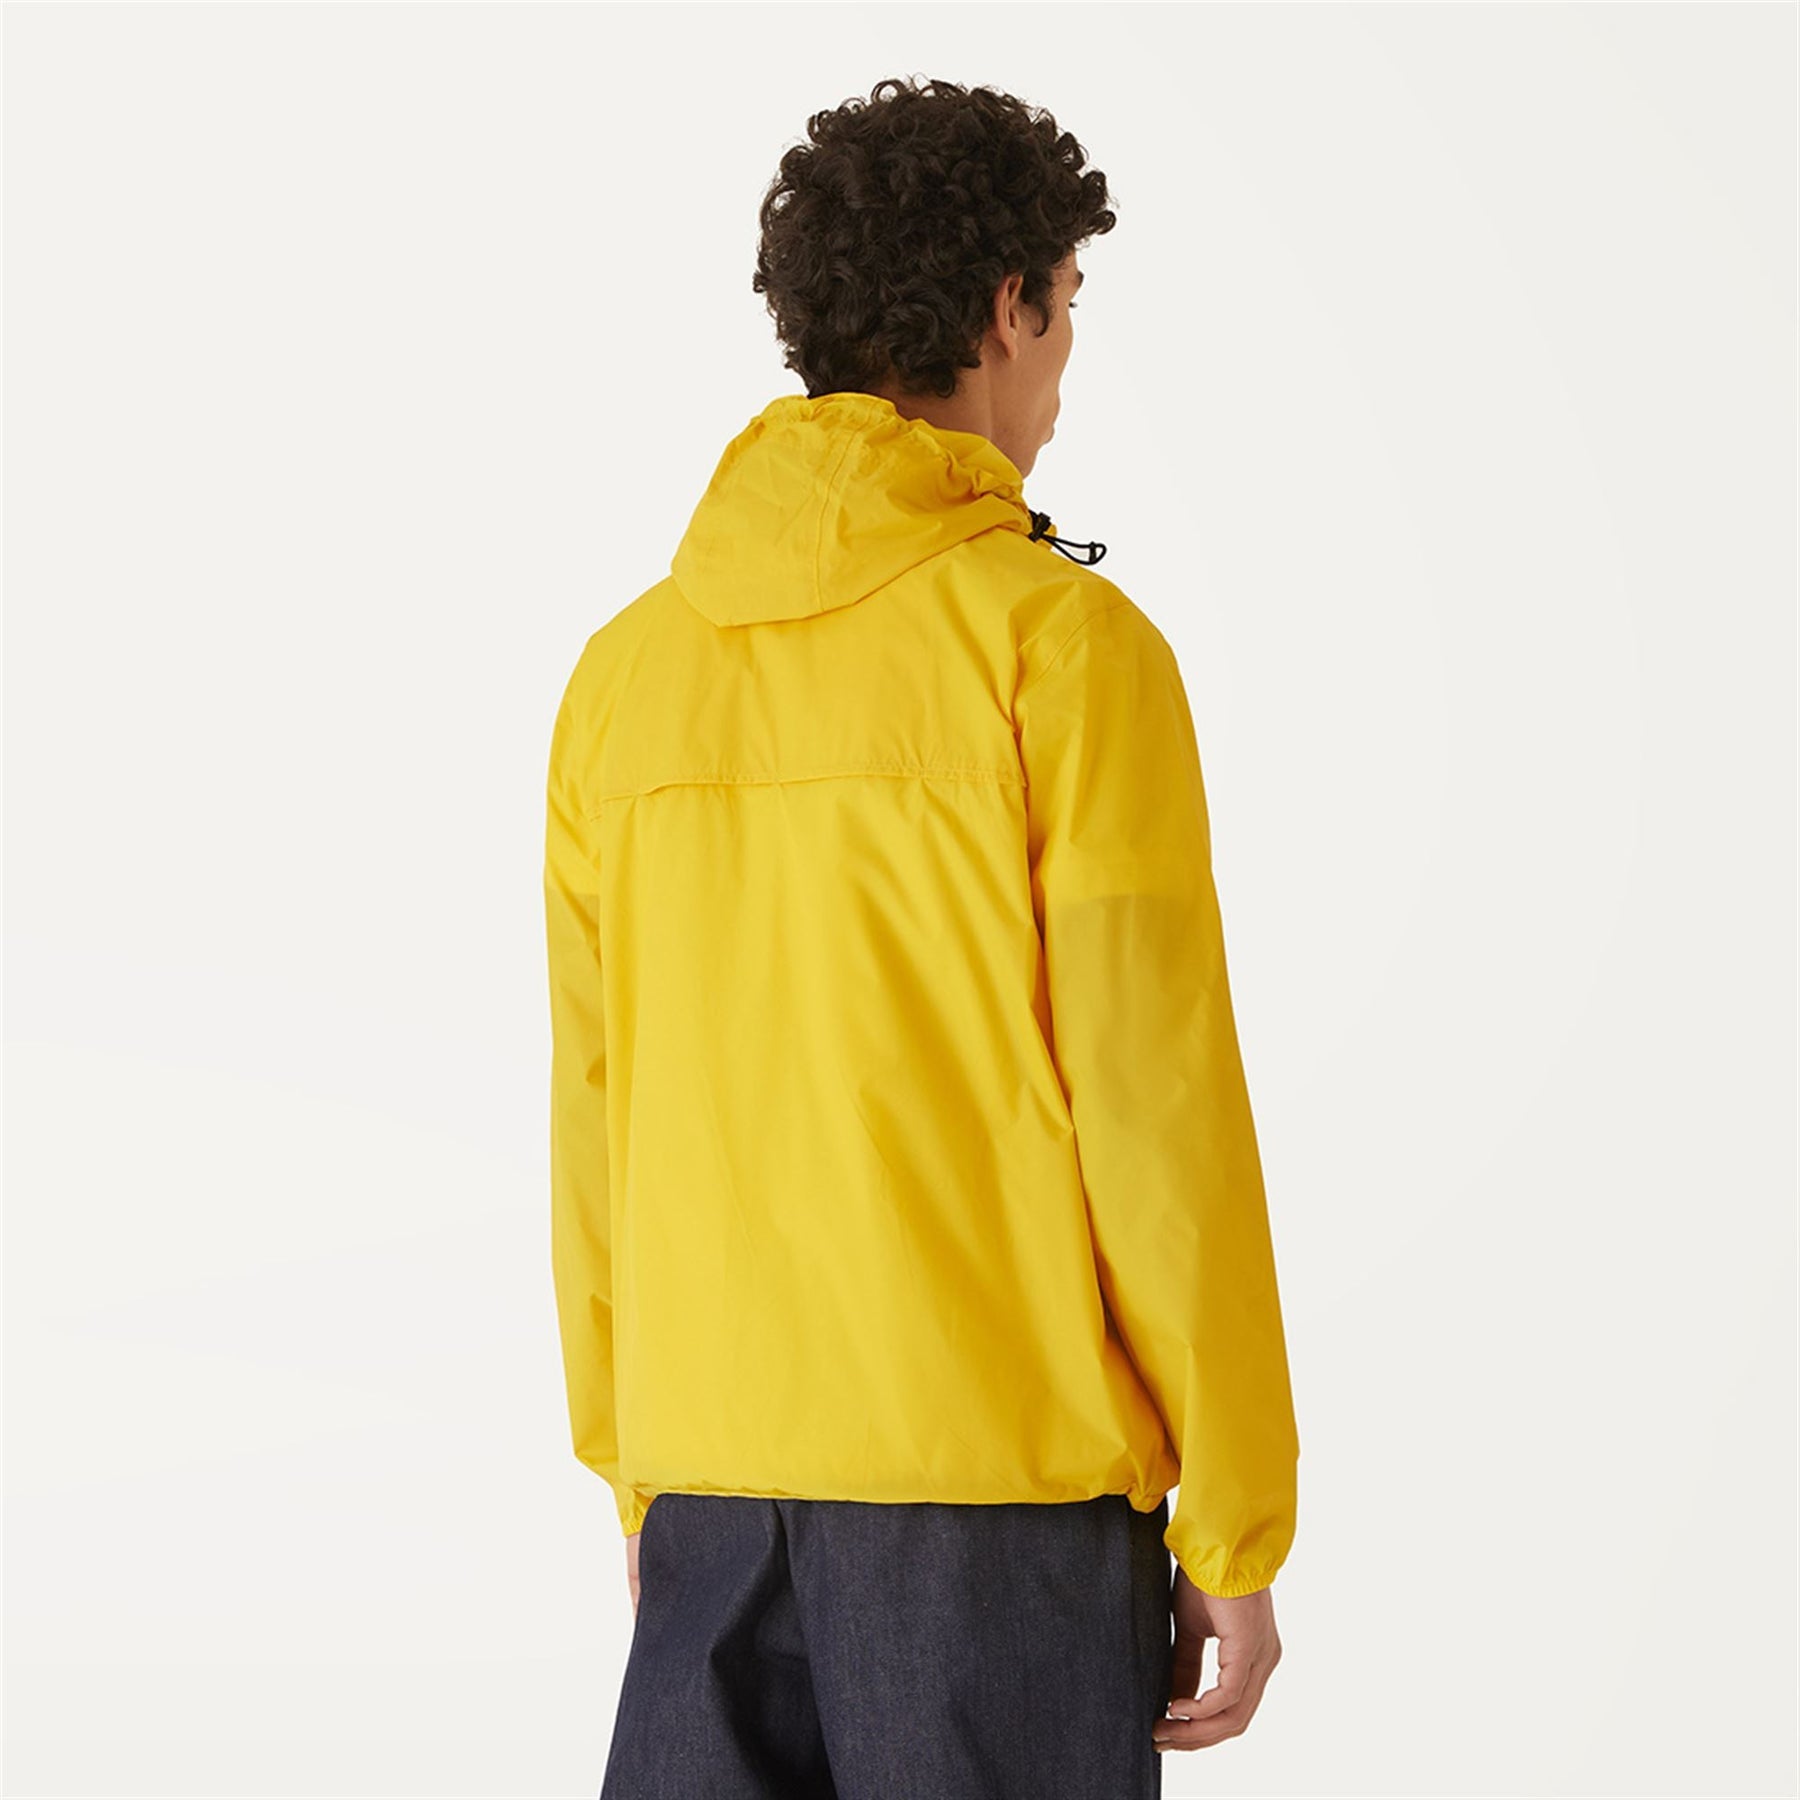 Claude - Unisex Packable Full Zip Waterproof  Rain Jacket in Yellow DkClaude - Unisex Packable Full Zip Waterproof  Rain Jacket in Yellow Dk